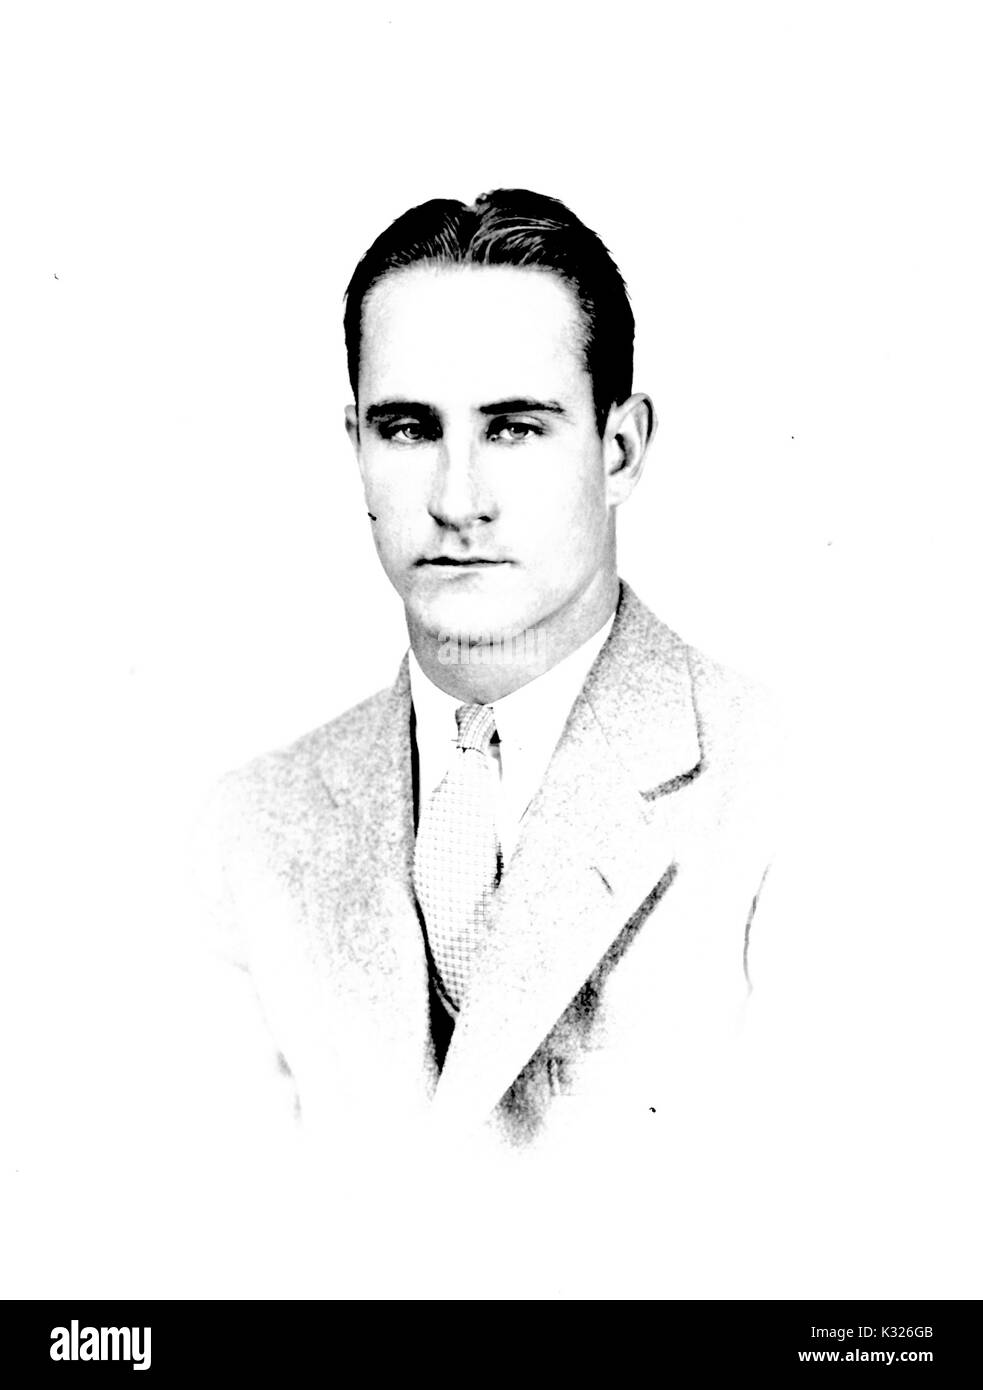 Portrait de la poitrine vers le haut d'Edward, un Dukehart Comegys Baltimore courtier immobilier et partenaire de l'agence de voyage Wilson Walker, 1930. Banque D'Images